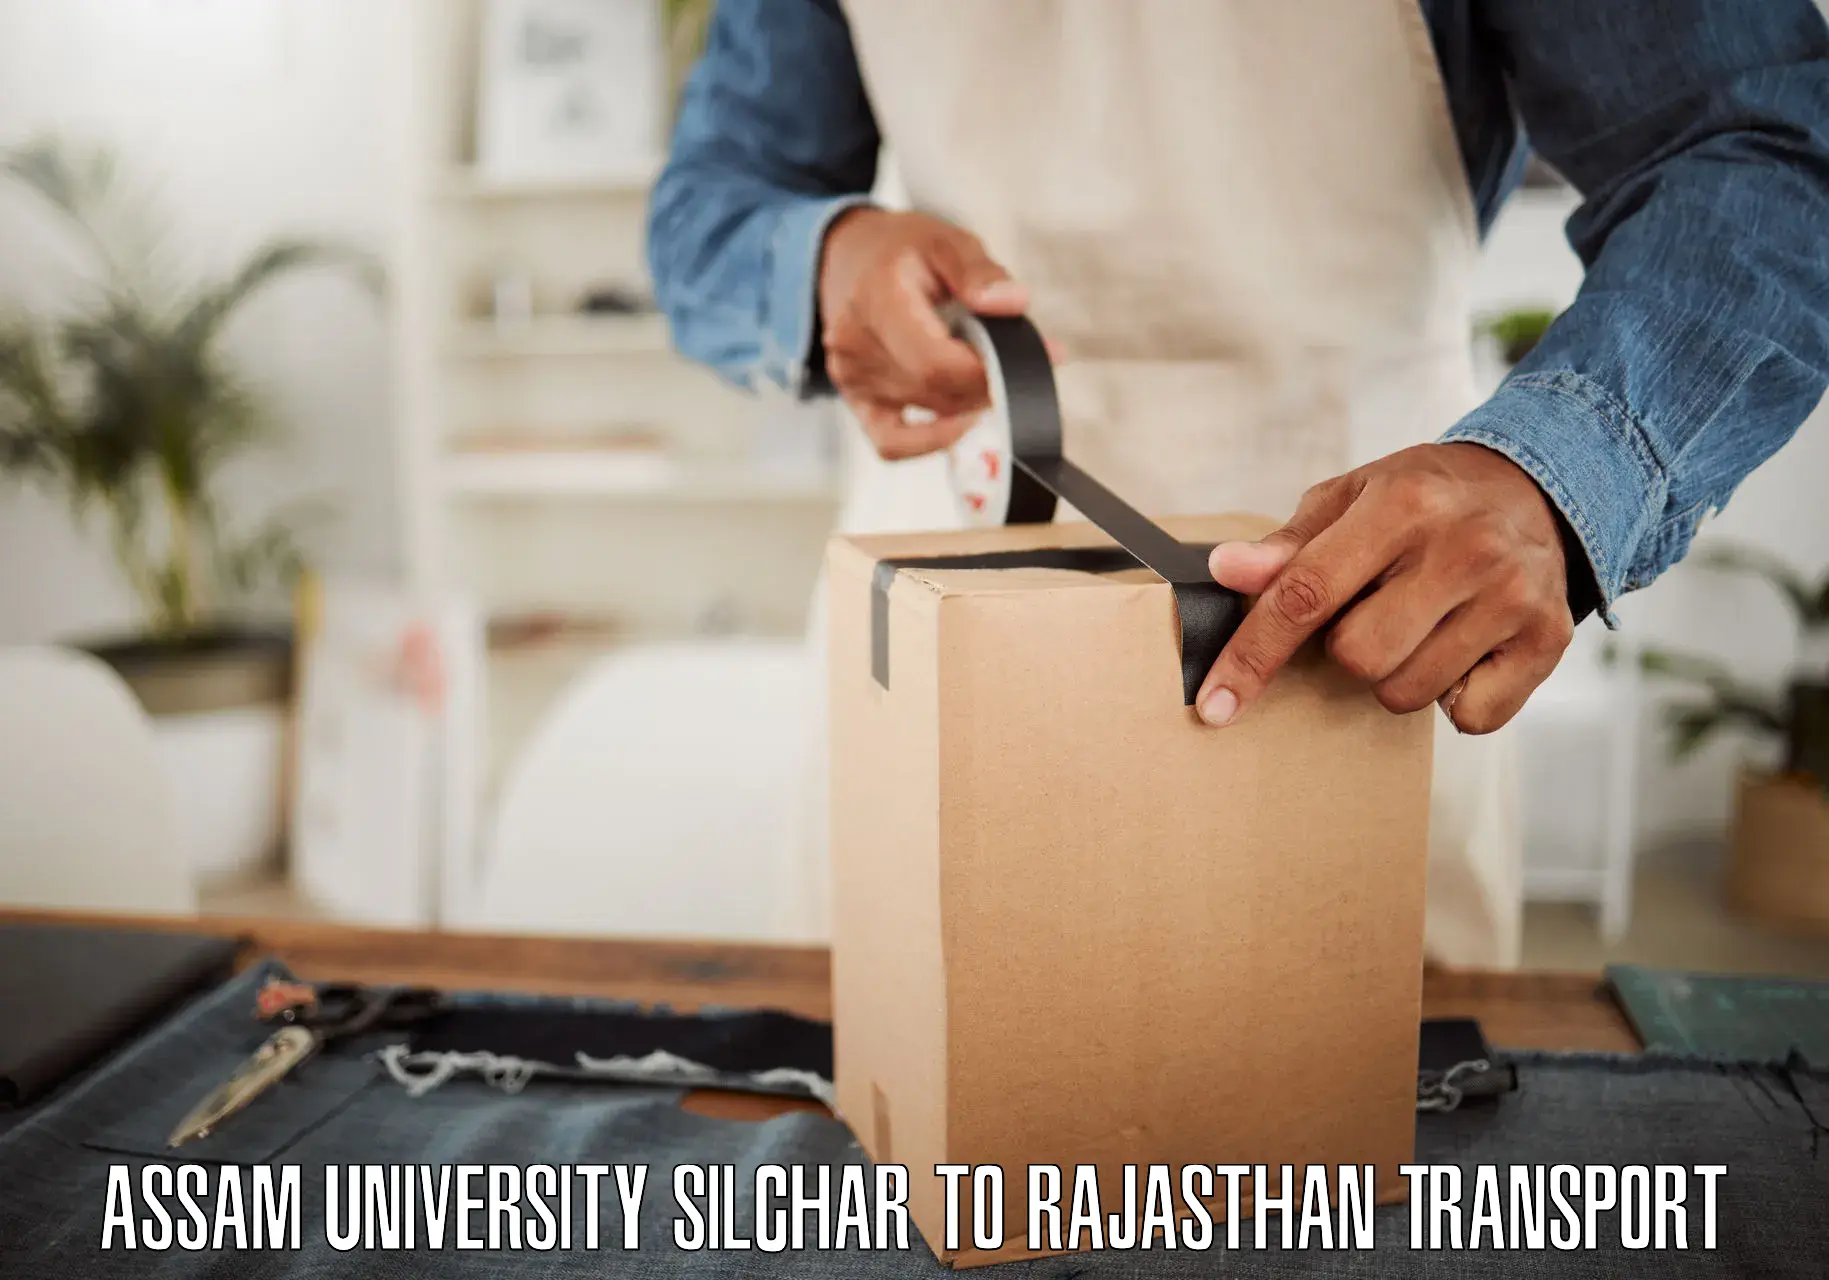 Delivery service Assam University Silchar to Ajmer